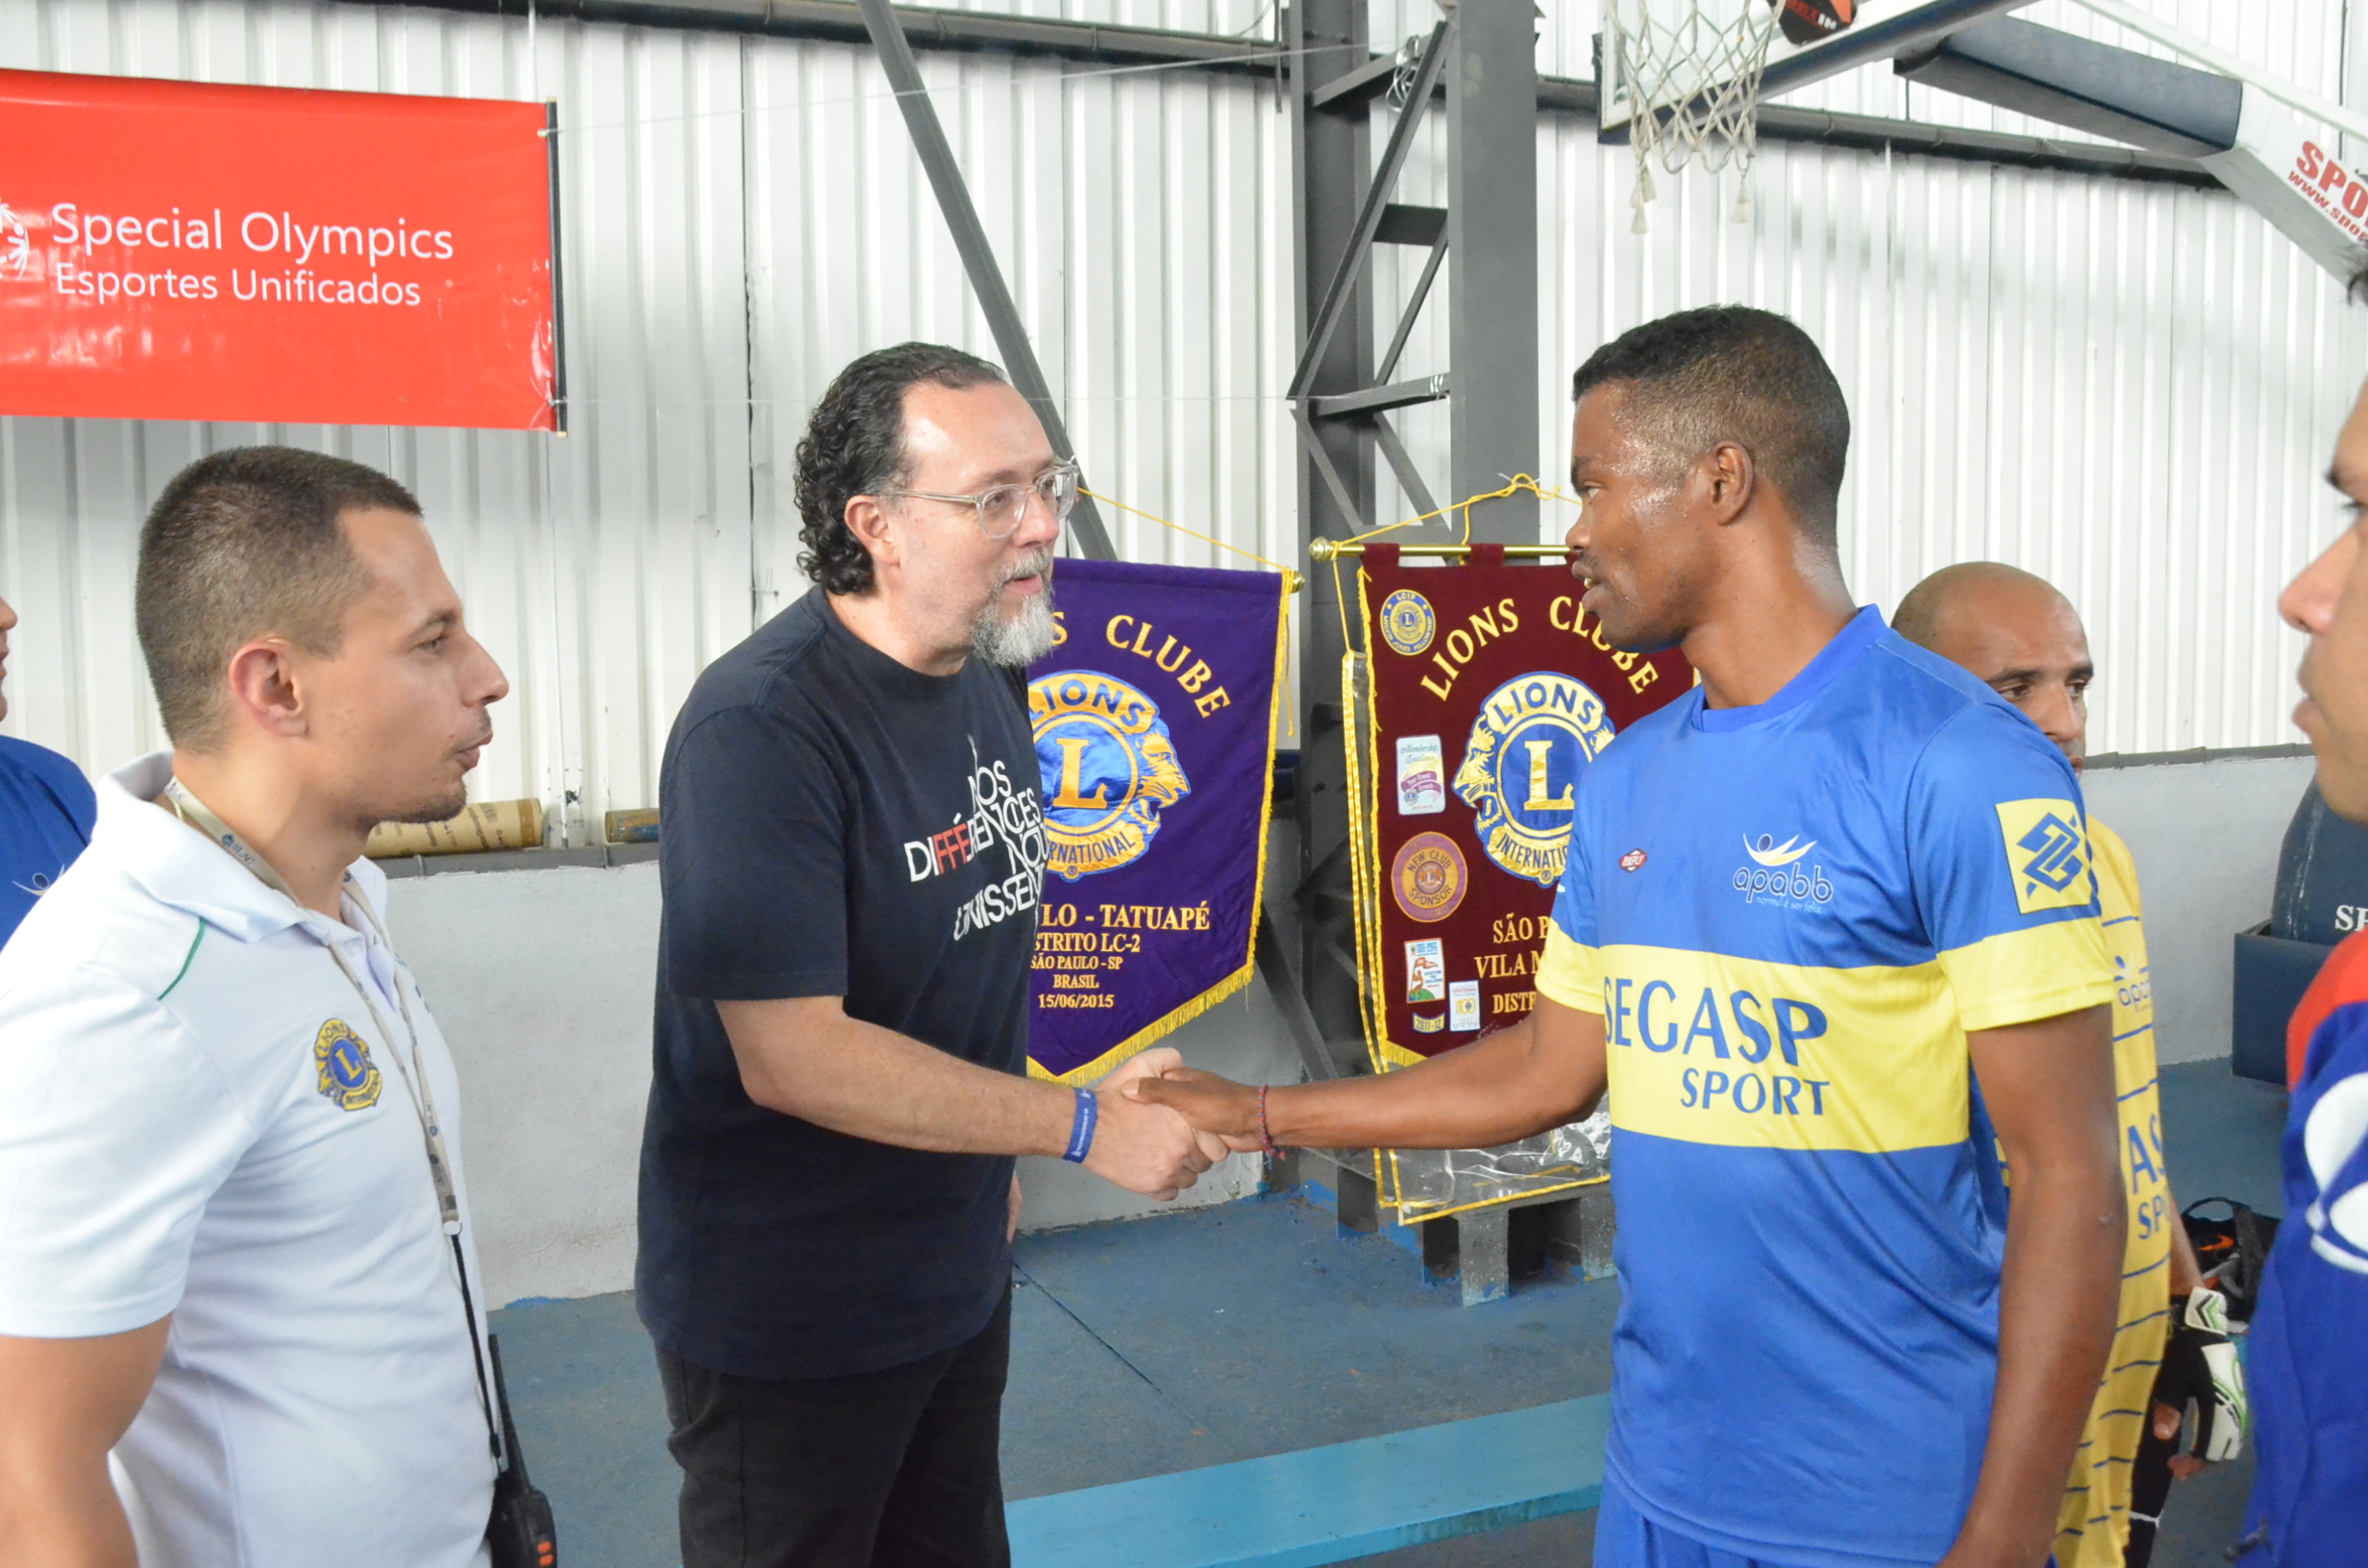 O Secretário Municipal de Esportes e Lazer, Carlos Bezerra Jr. recepciona atleta de futebol das Olimpíadas Especiais